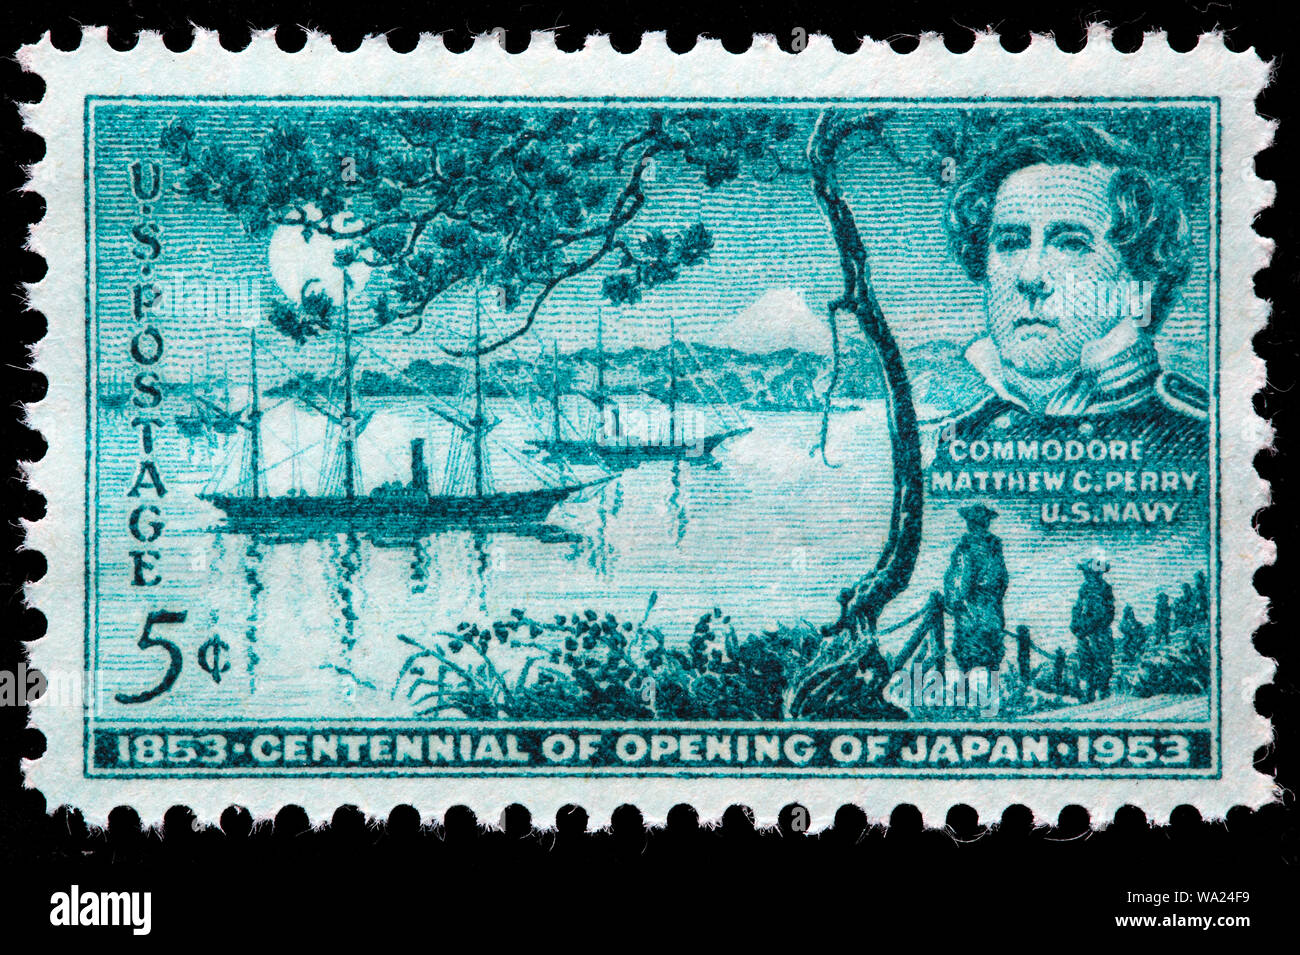 Le commodore Matthew C. Perry (1794-1858), premier mouillage de la baie de Tokyo, l'ouverture du Japon, timbre-poste, USA, 1953 Banque D'Images